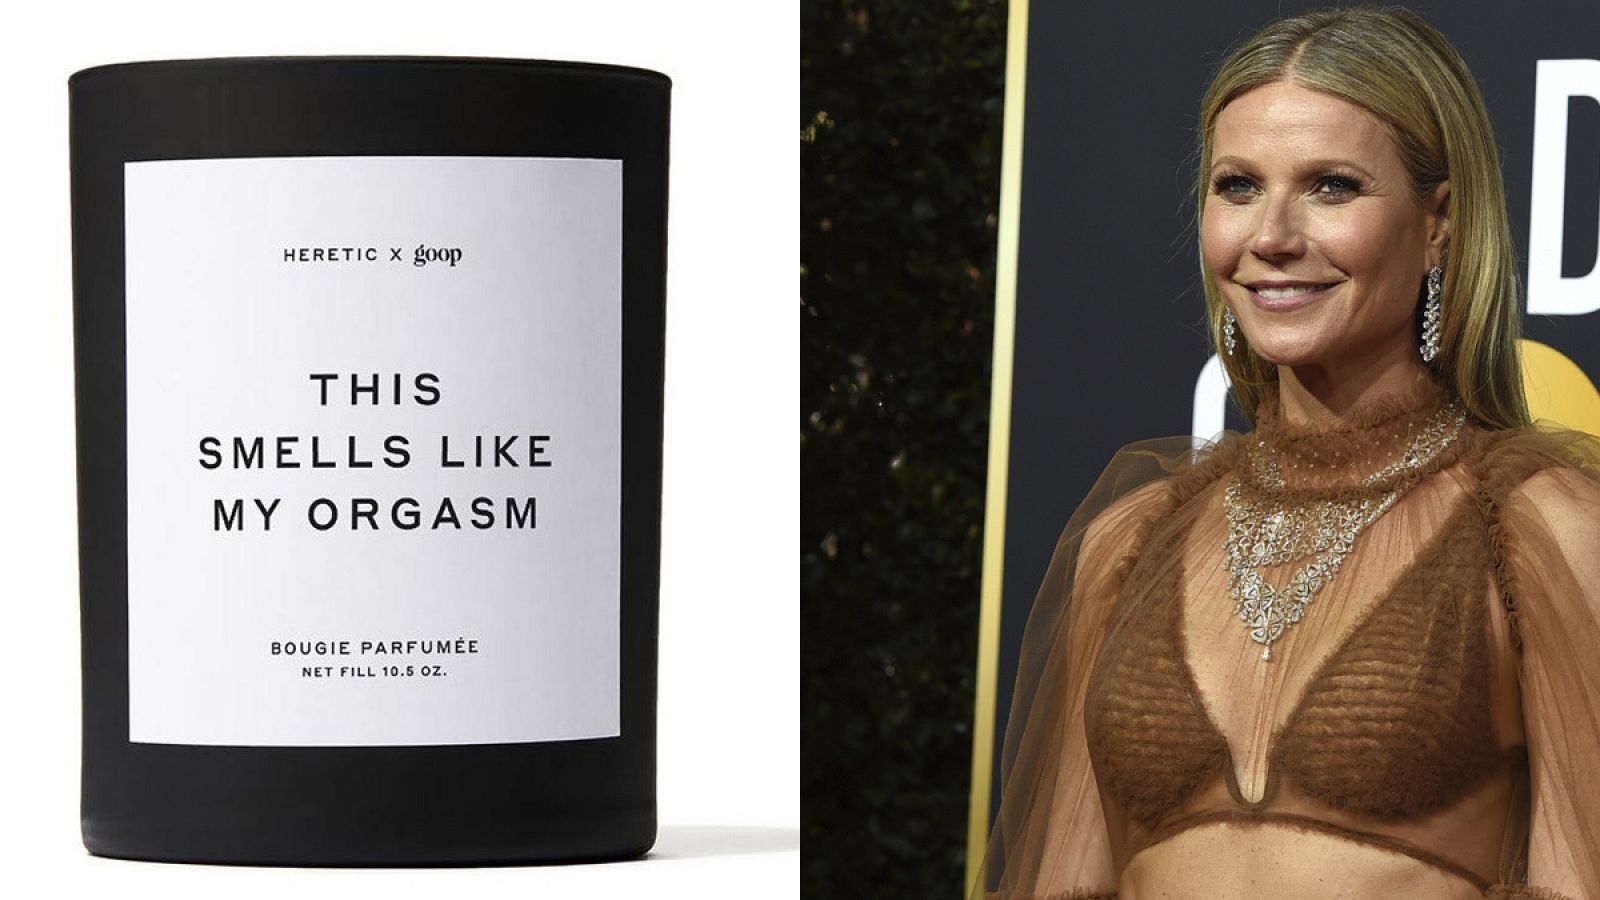 La nueva vela de Gwyneth Paltrow es "sexy, sorprendente y adictiva".